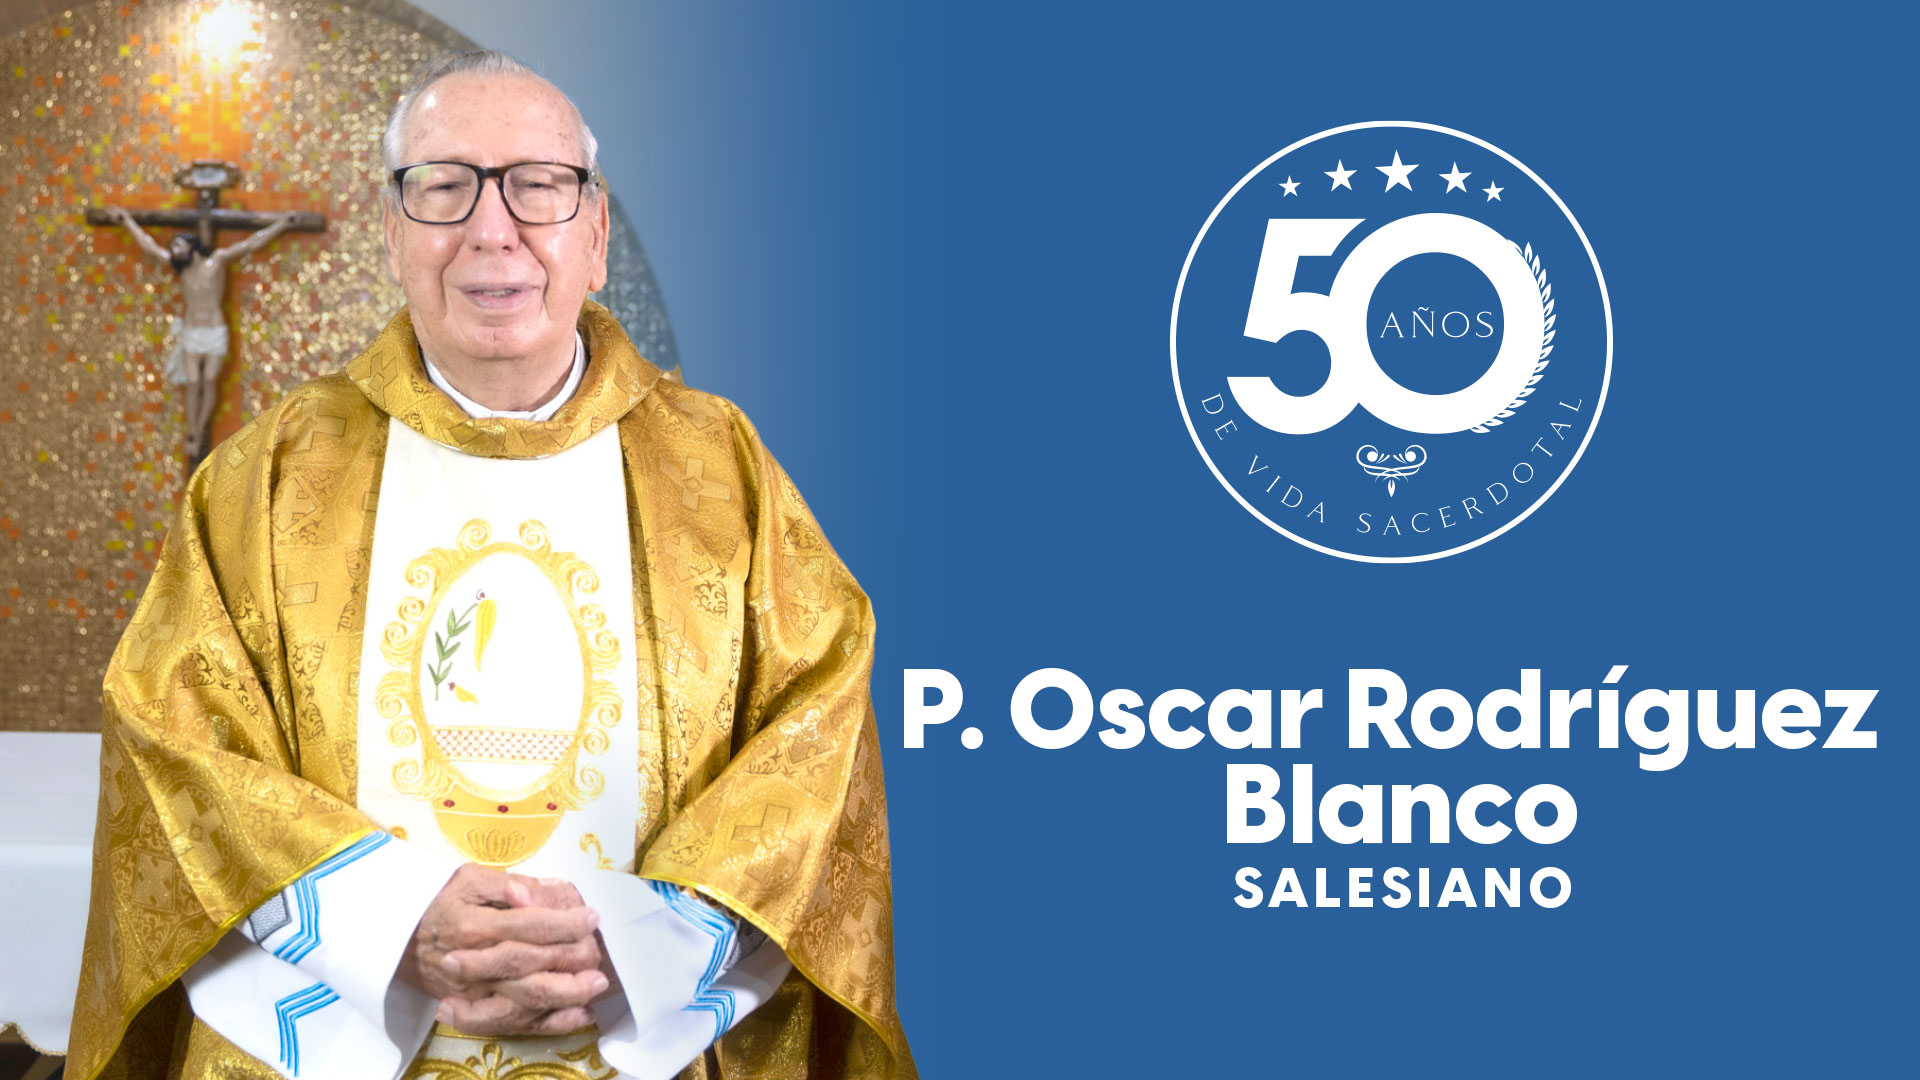 P Oscar Rodriguez Blanco, 50 años de vida sacerdotal